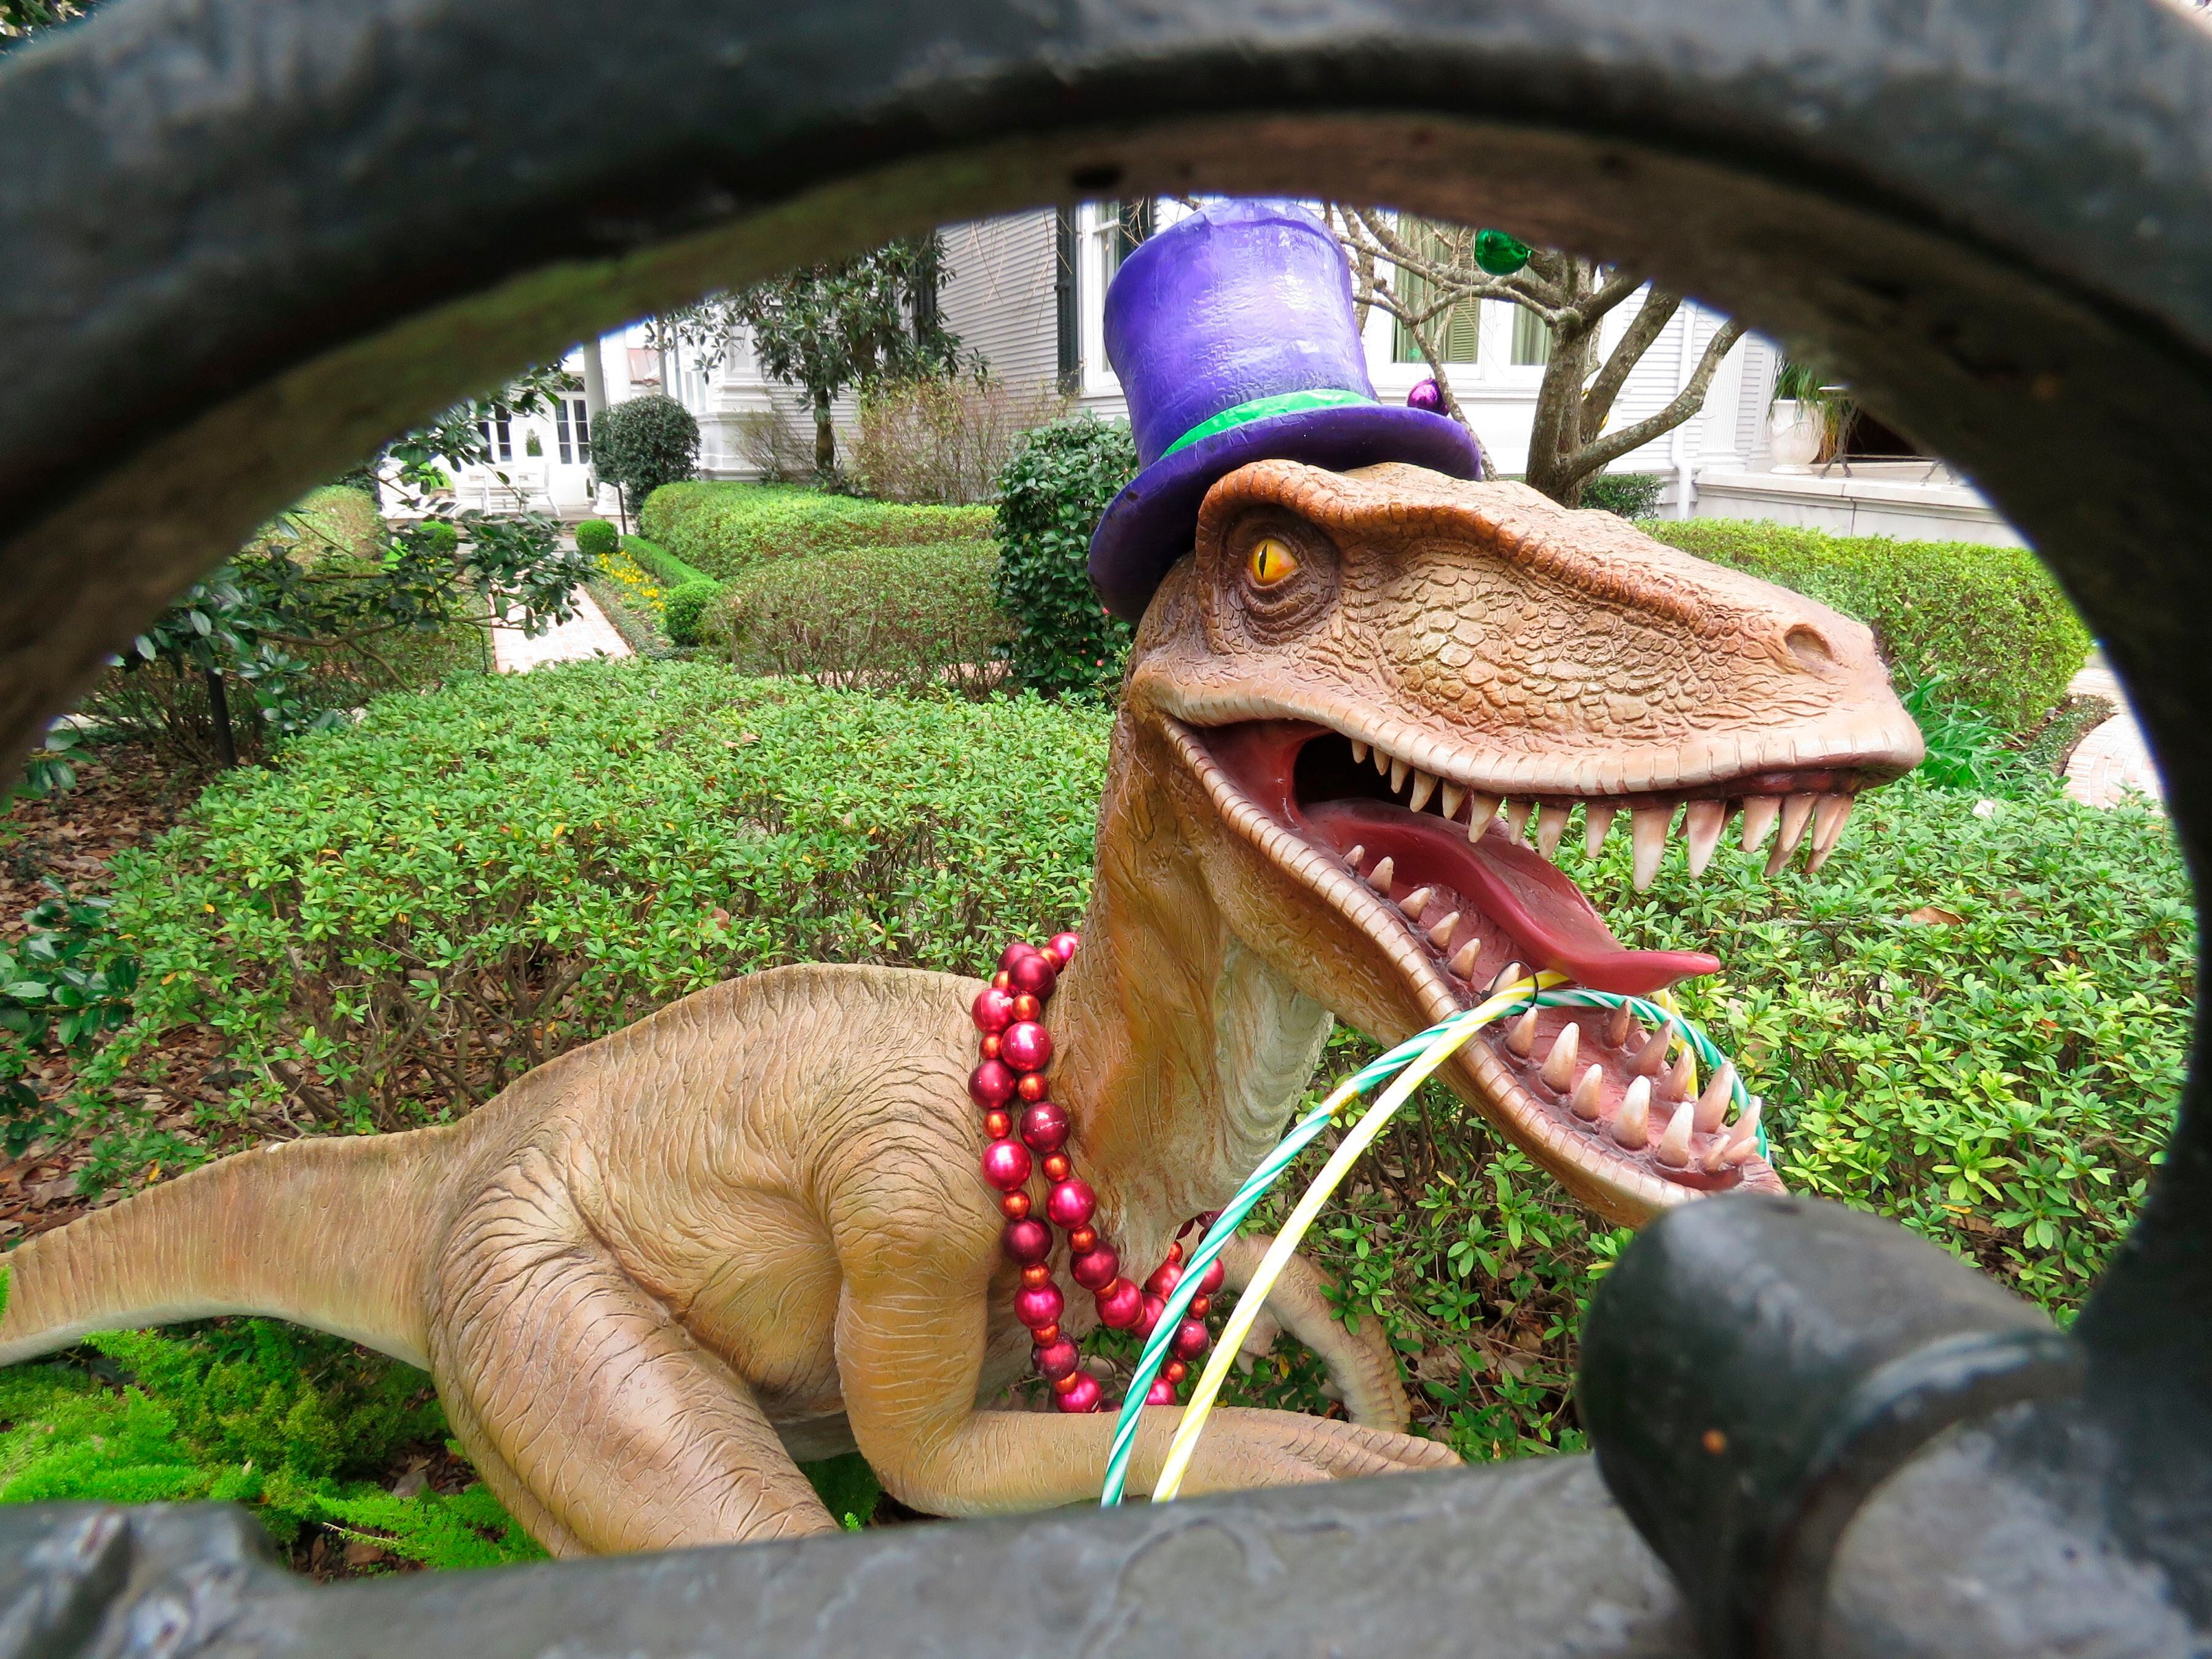 Un enorme dinosaurio ensombrerado decora una mansión en la avenida St. Charles de Nueva Orleans el martes 26 de enero de 2021. Con la cancelación de los tradicionales desfiles de Mardi Gras debido a la pandemia de coronavirus, miles alrededor de la ciudad han decorado sus casas para celebrar el Carnaval. (AP Foto/Janet McConnaughey)